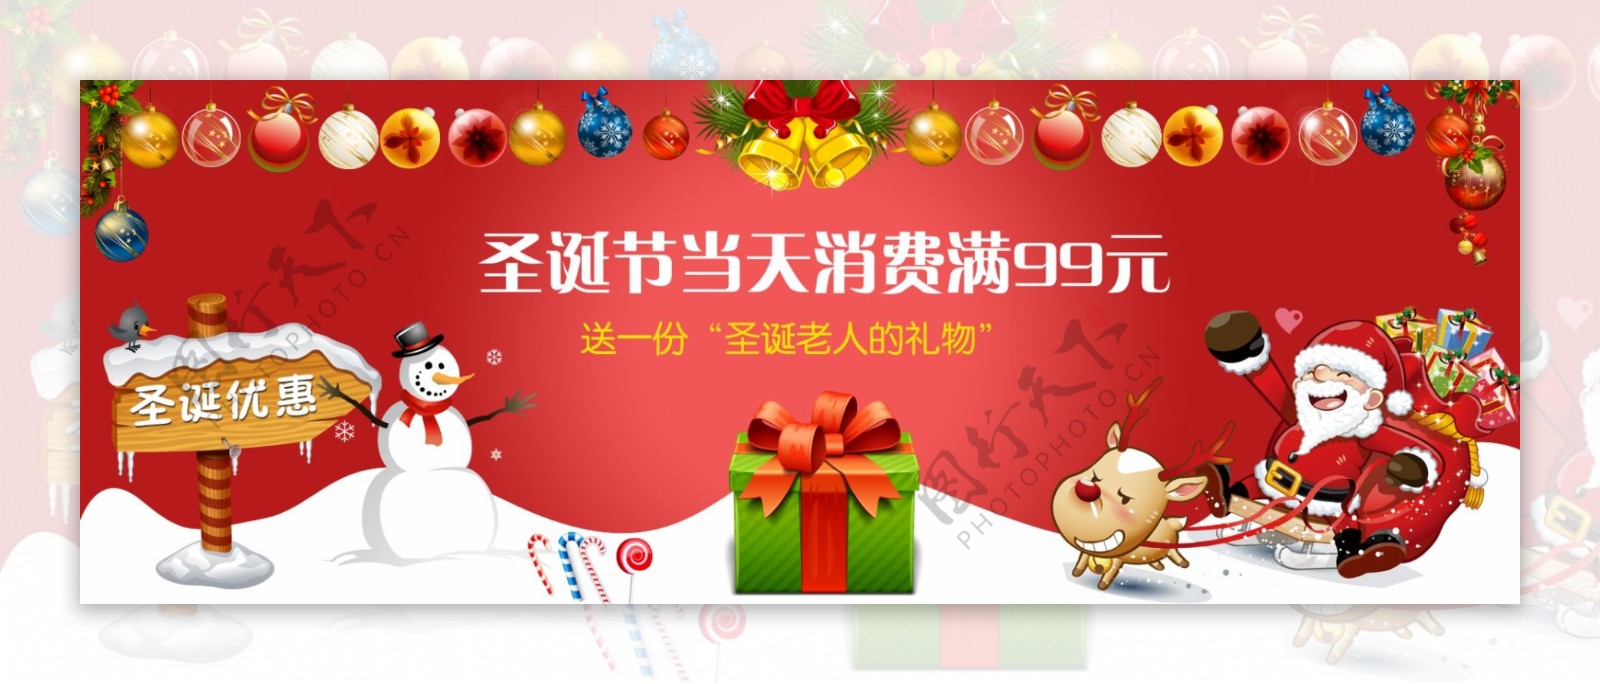 网页主图圣诞节促销活动礼物